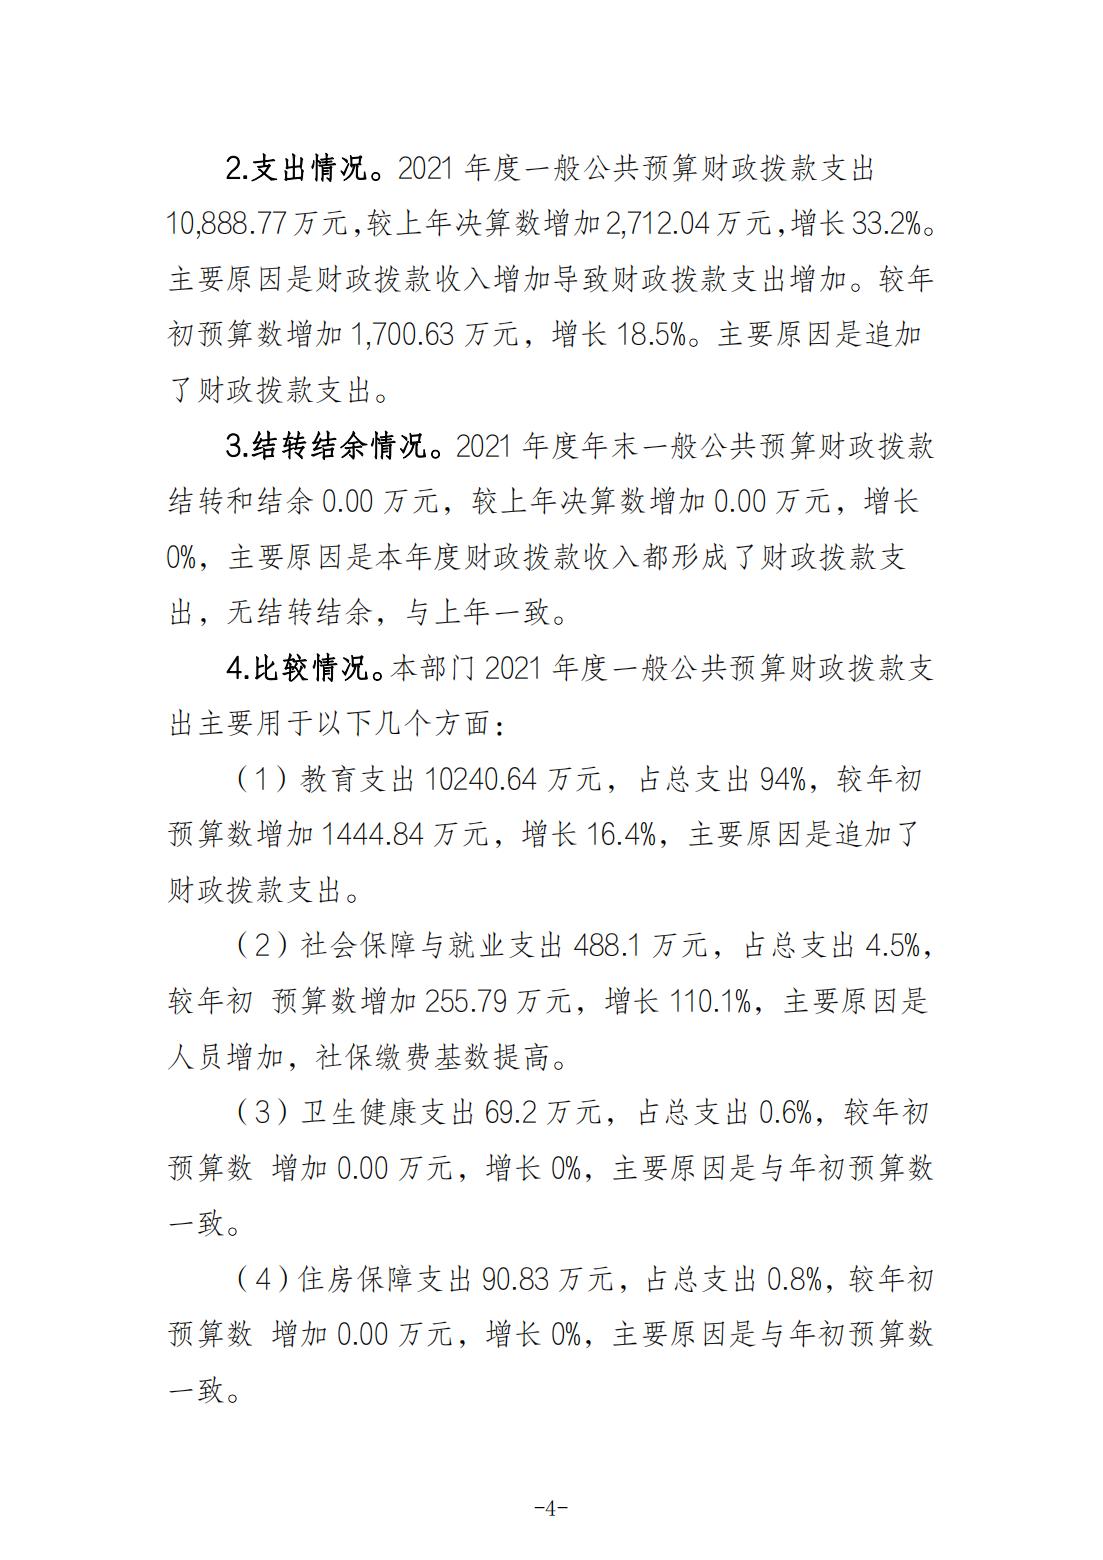 重庆城市职业学院2021年度部门决算情况说明_03.jpg